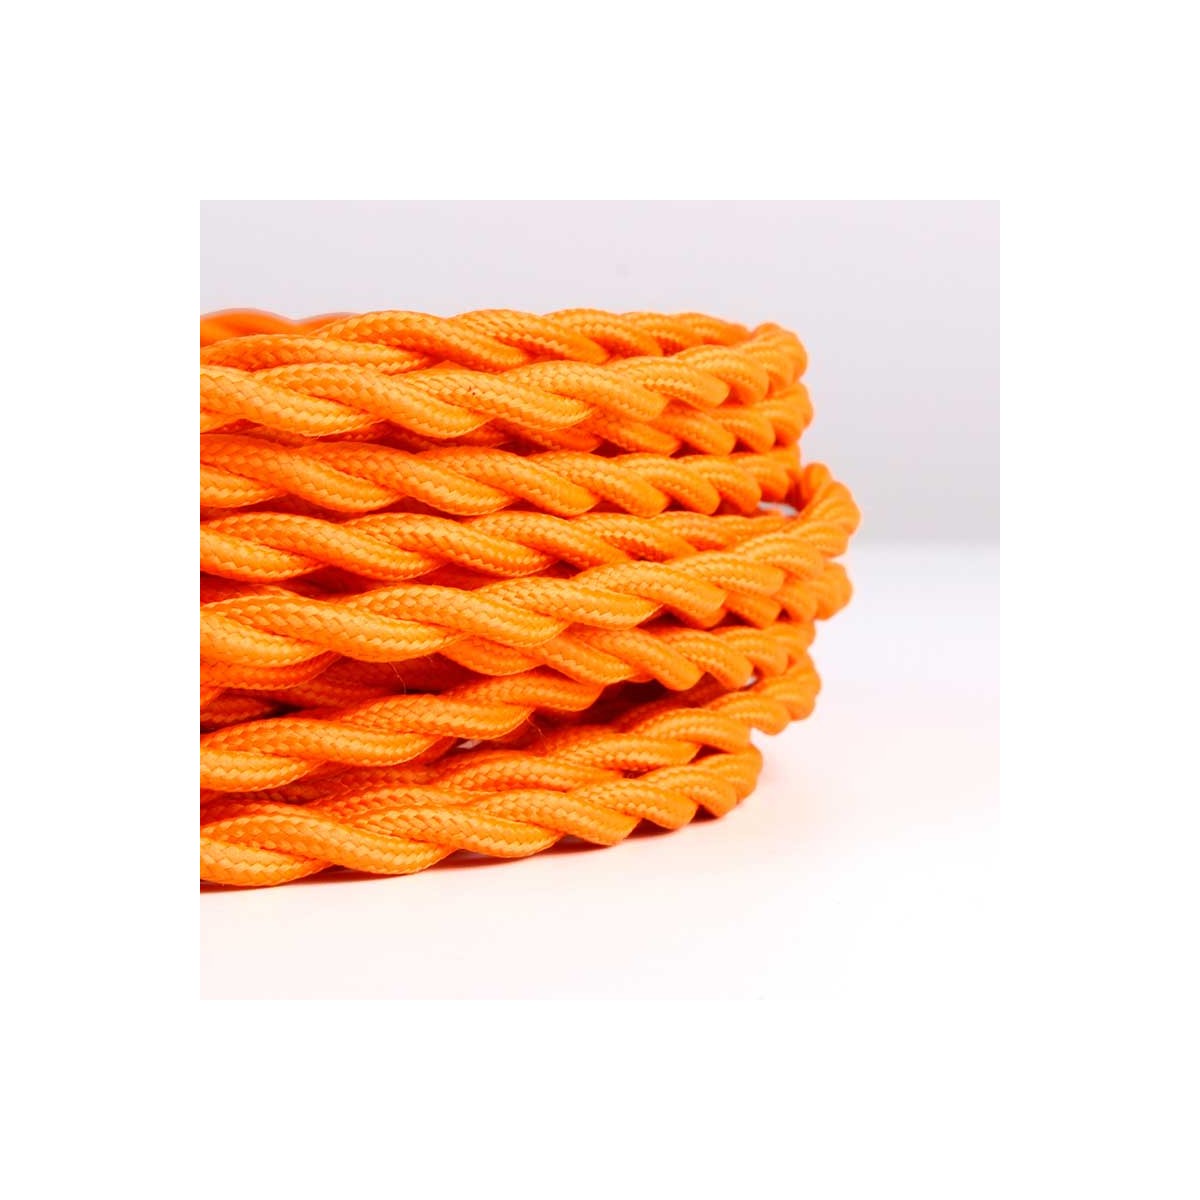 Kabel mit orangefarbenem, weichem Stoff mit Sojaeffekt überzogen